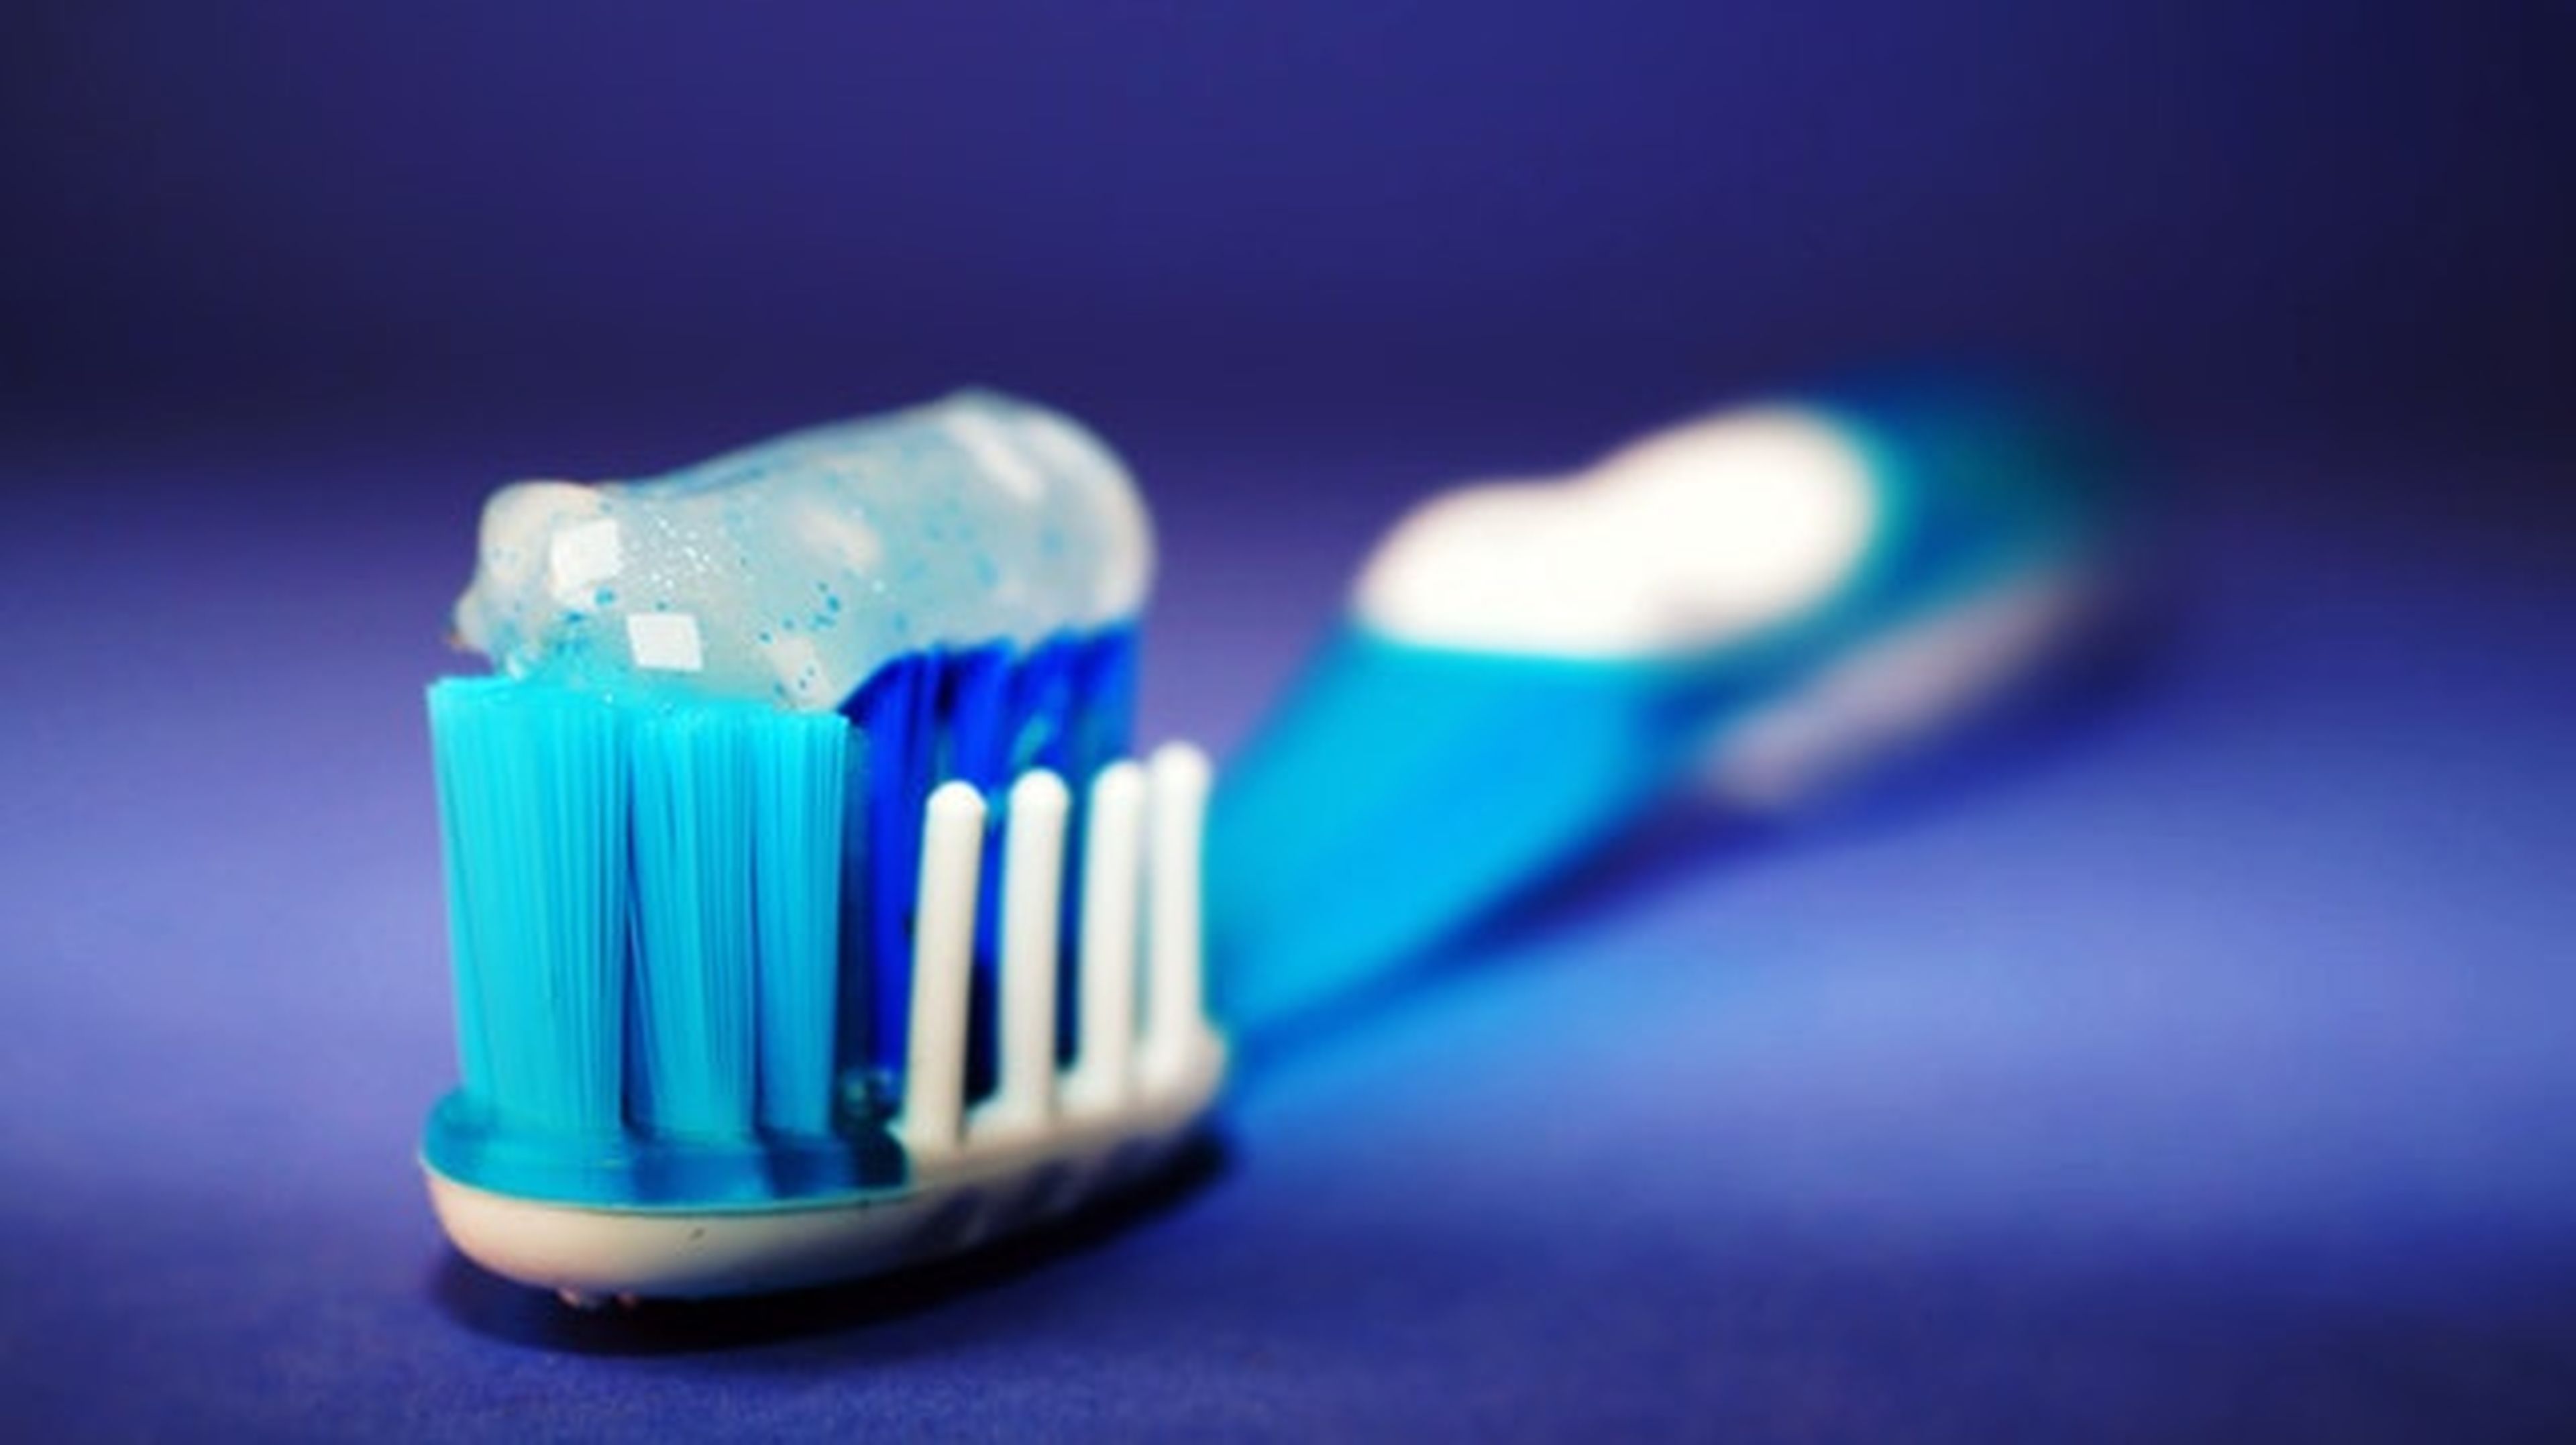 Cepillar los dientes demasiado fuerte puede ser muy dañino